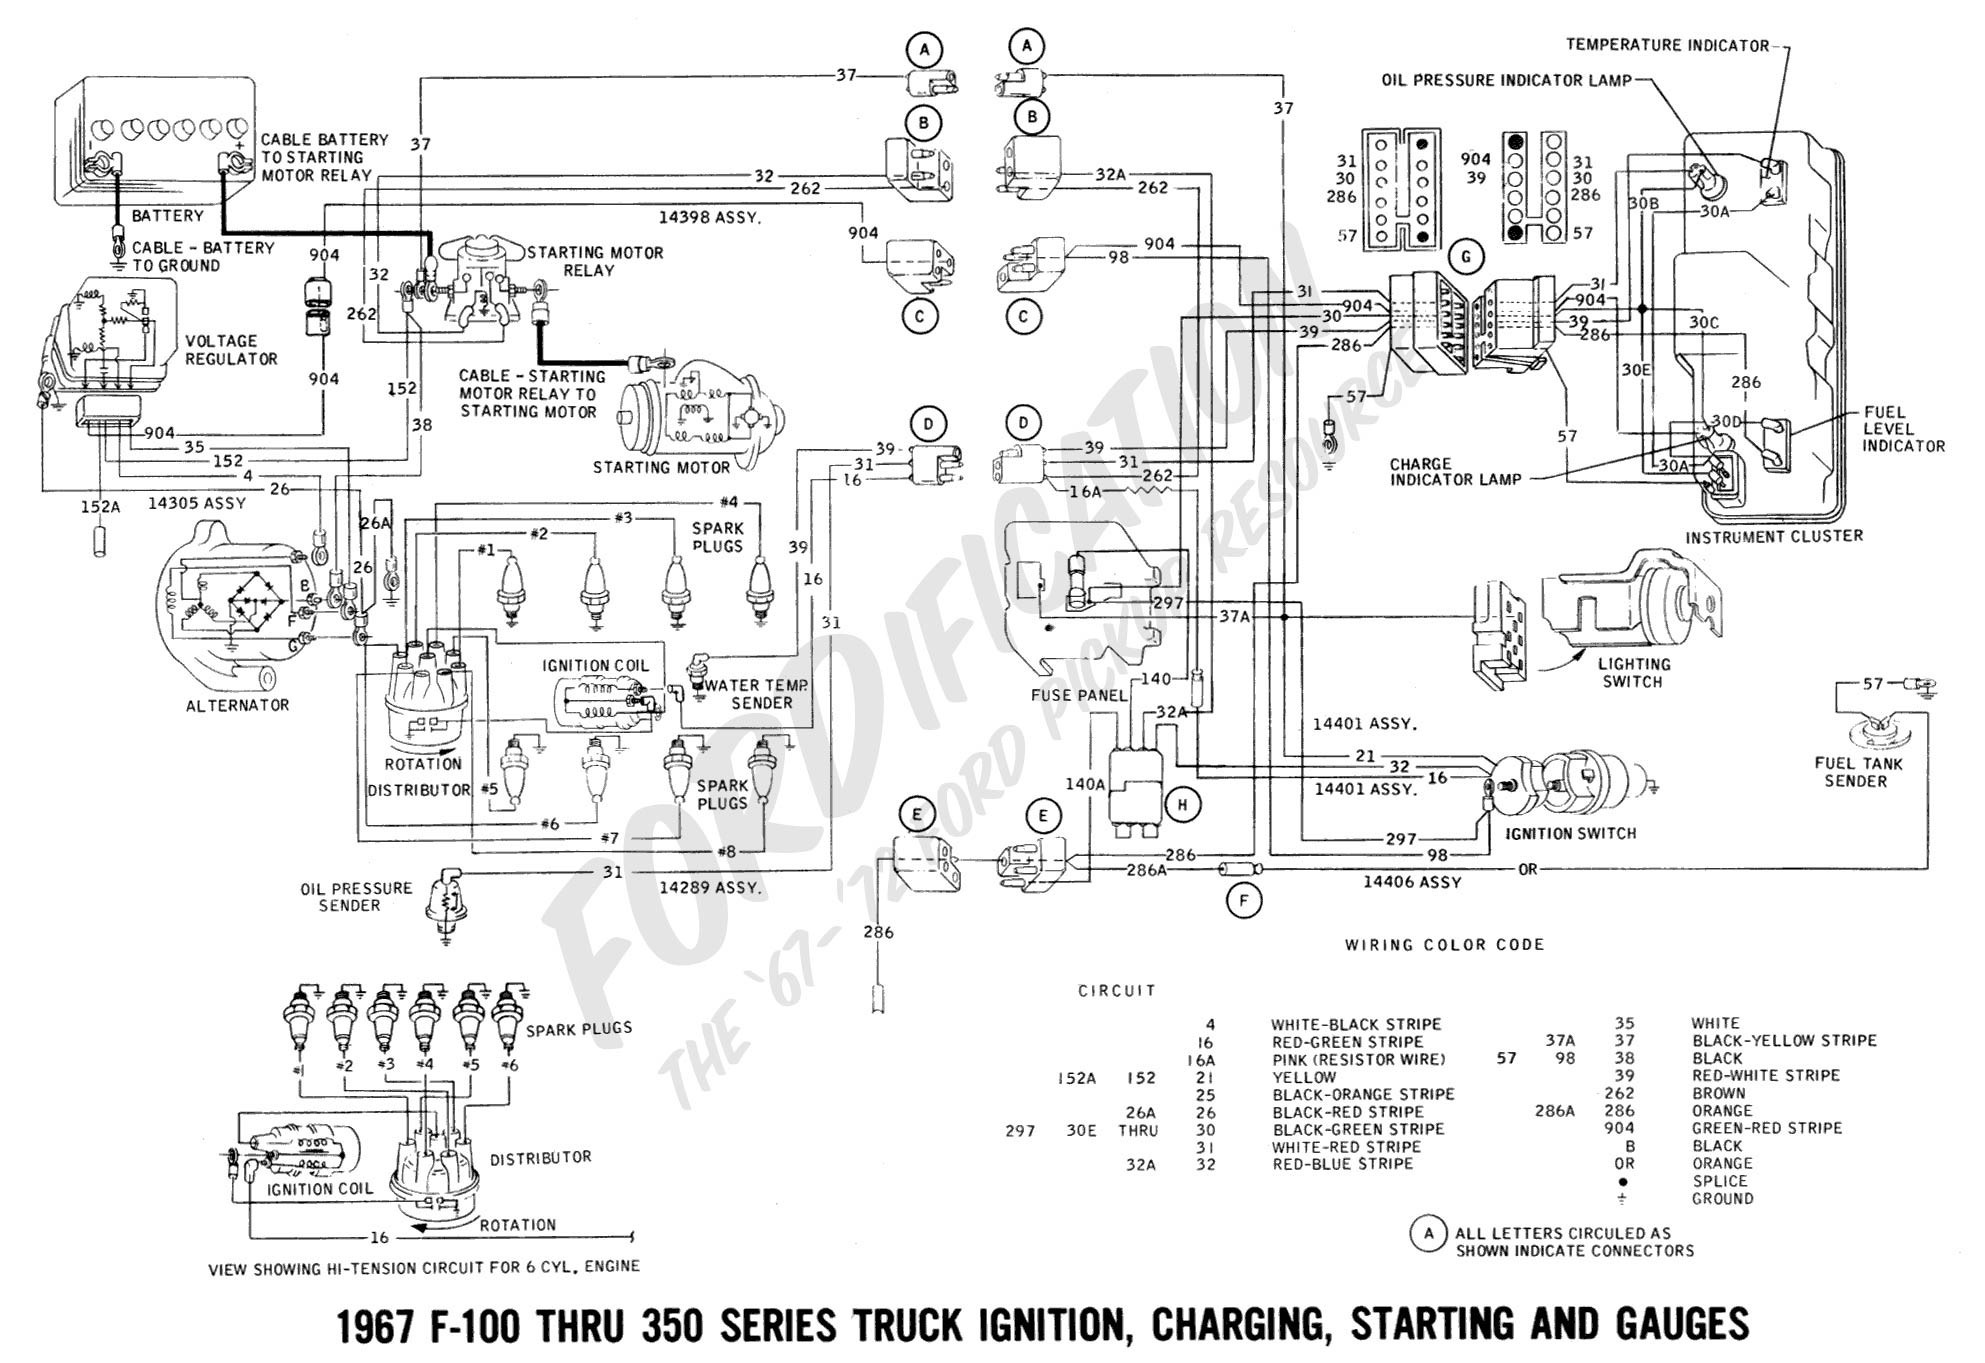 2002 Ford Explorer Spark Plug Wiring Diagram from detoxicrecenze.com